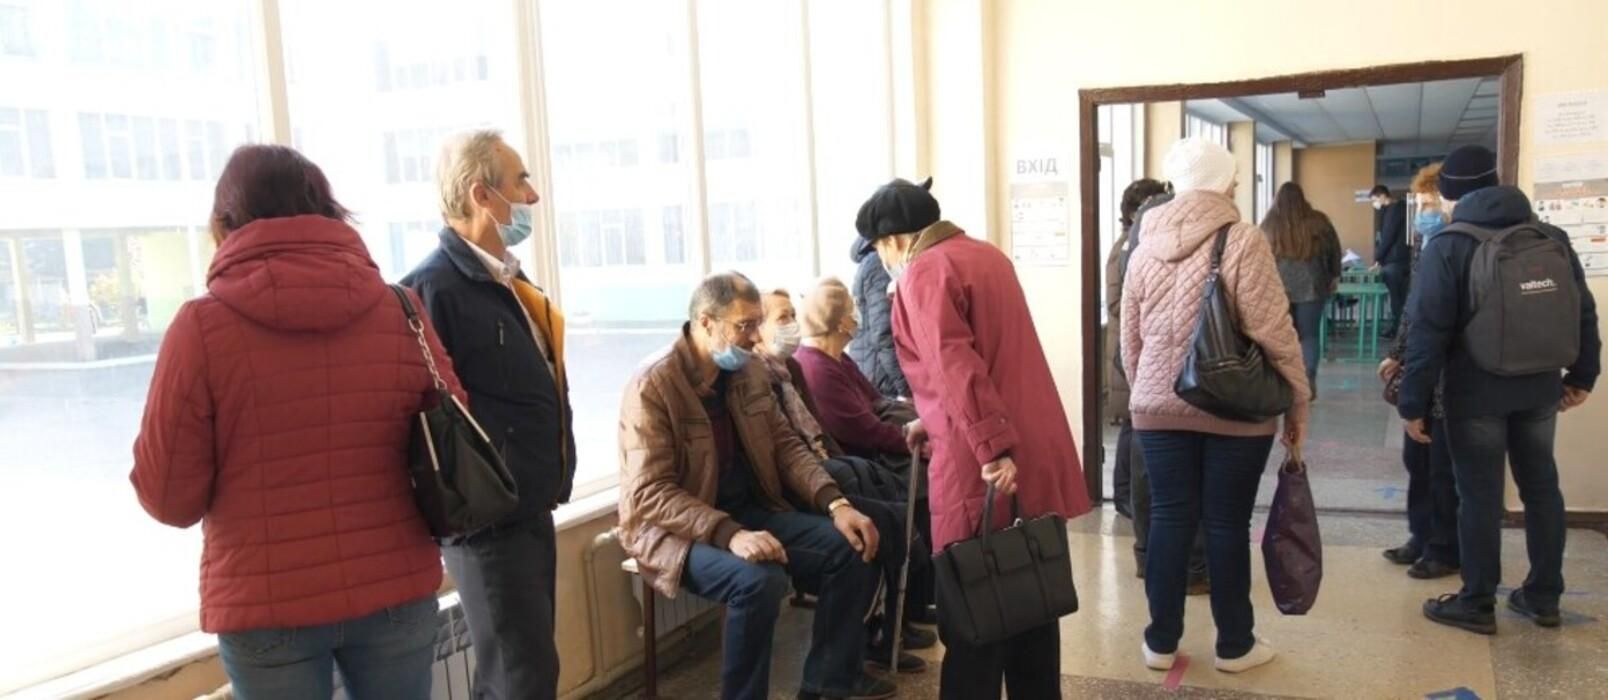 "Хочеться ще пожити": харків'яни масово пішли вакцинуватися від COVID-19 на виборах мера - Новини Харкова - 24 Канал